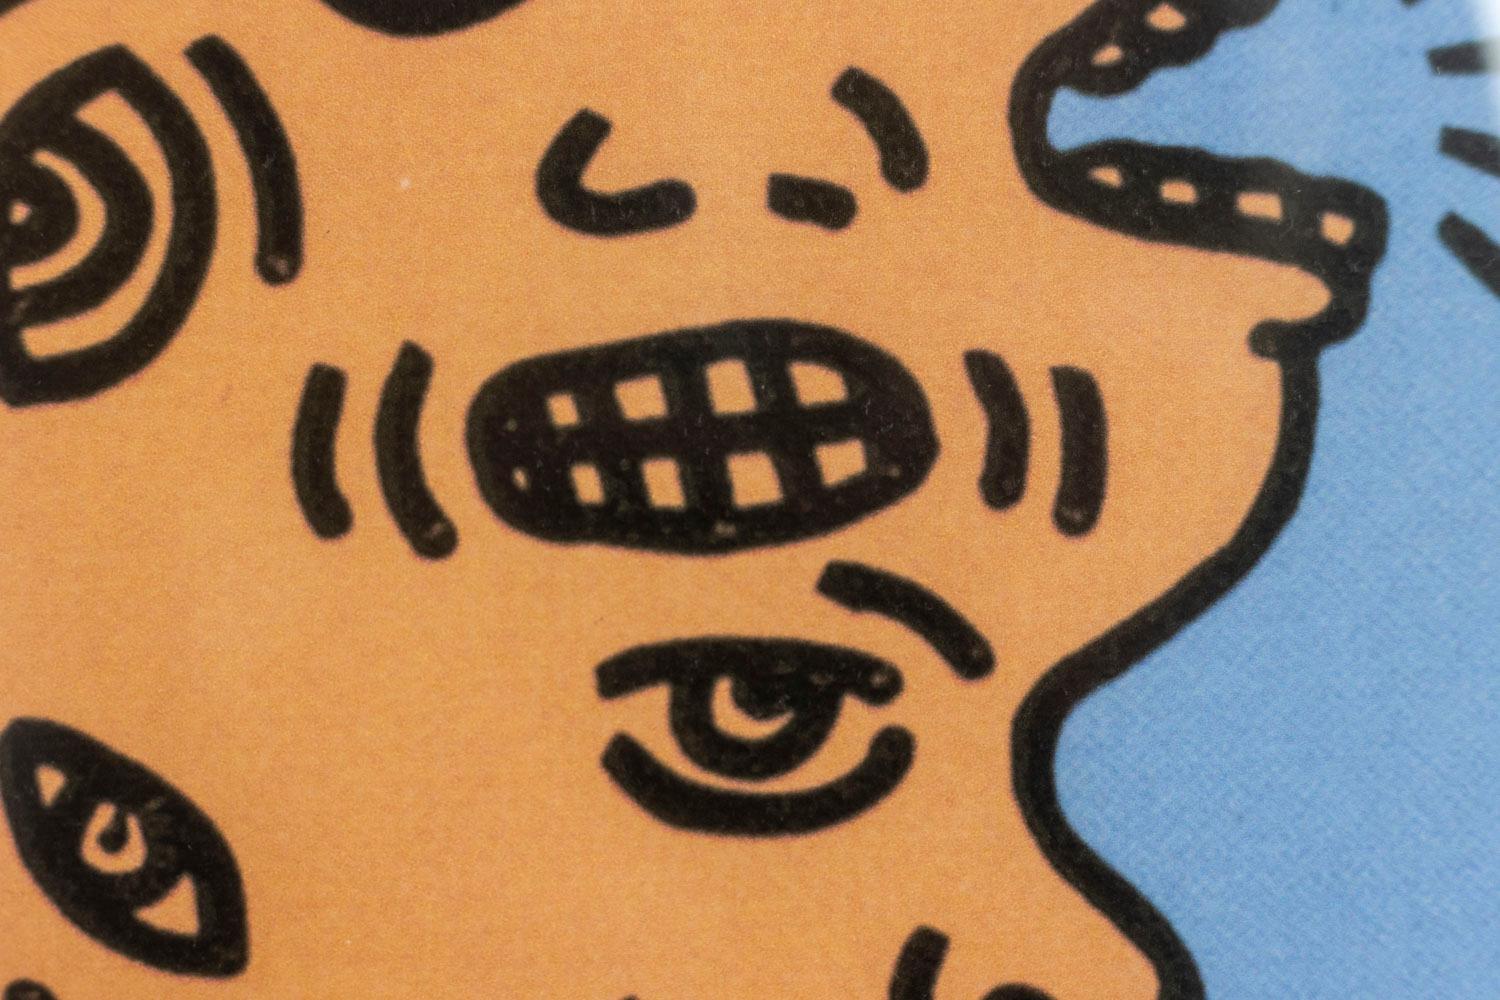 Keith Haring, signiert und nummeriert.

Lithografie, die ein Gesicht mit mehreren Köpfen in Lachstönen auf blauem Grund darstellt, in einem Rahmen aus blonder Eiche.

Amerikanische Arbeiten aus den 1990er Jahren.